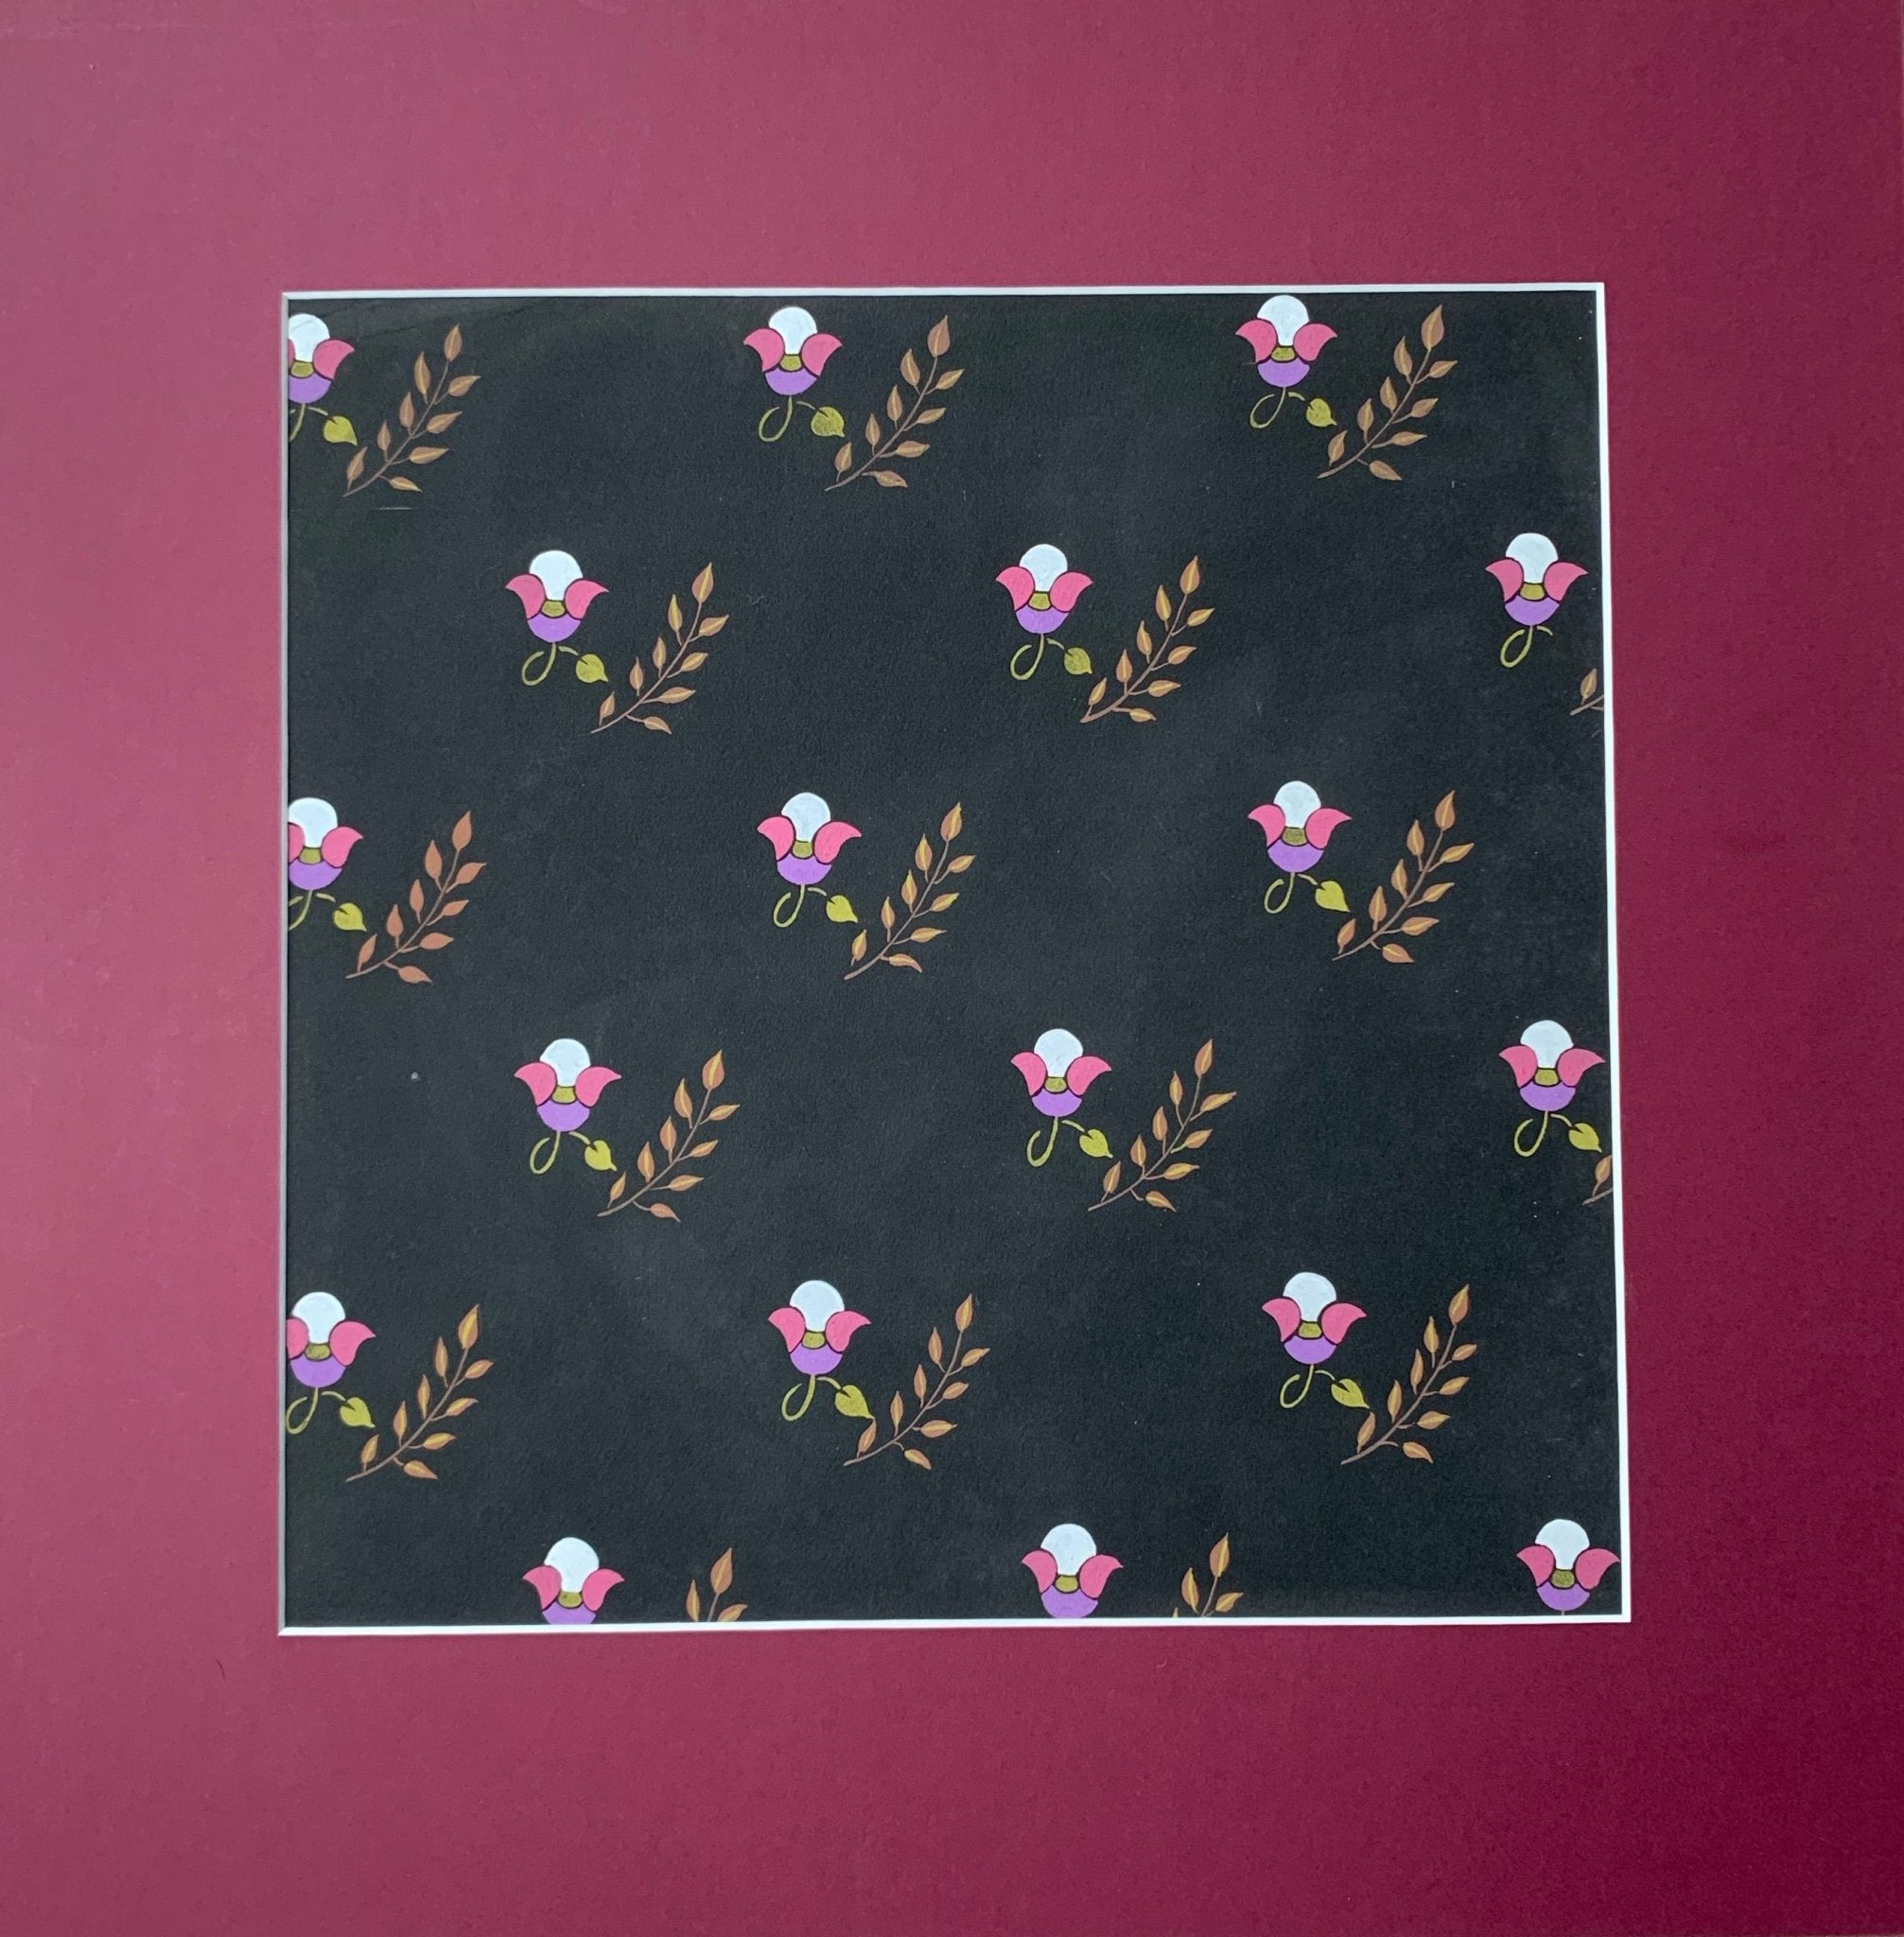 Deco roses textile design - Natalia Willmott